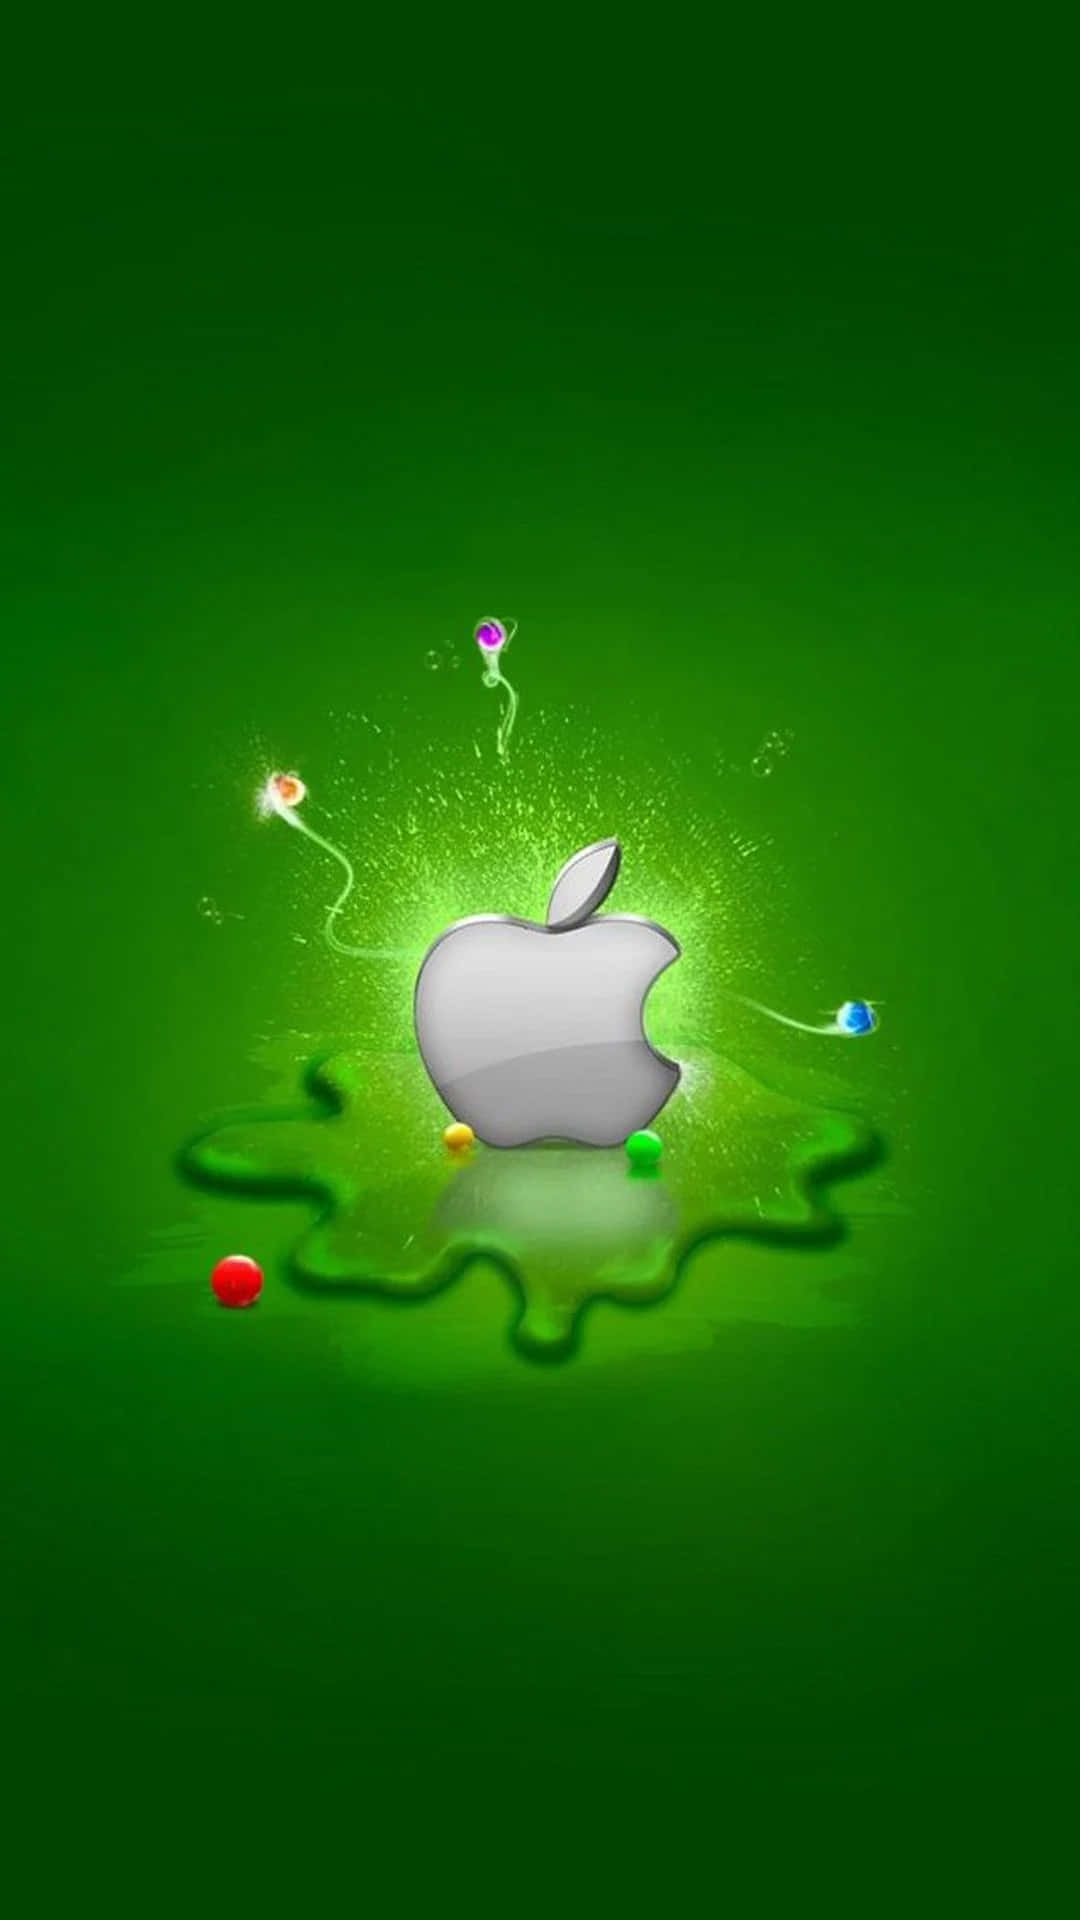 Illogo Di Apple: Splendente Di Successo